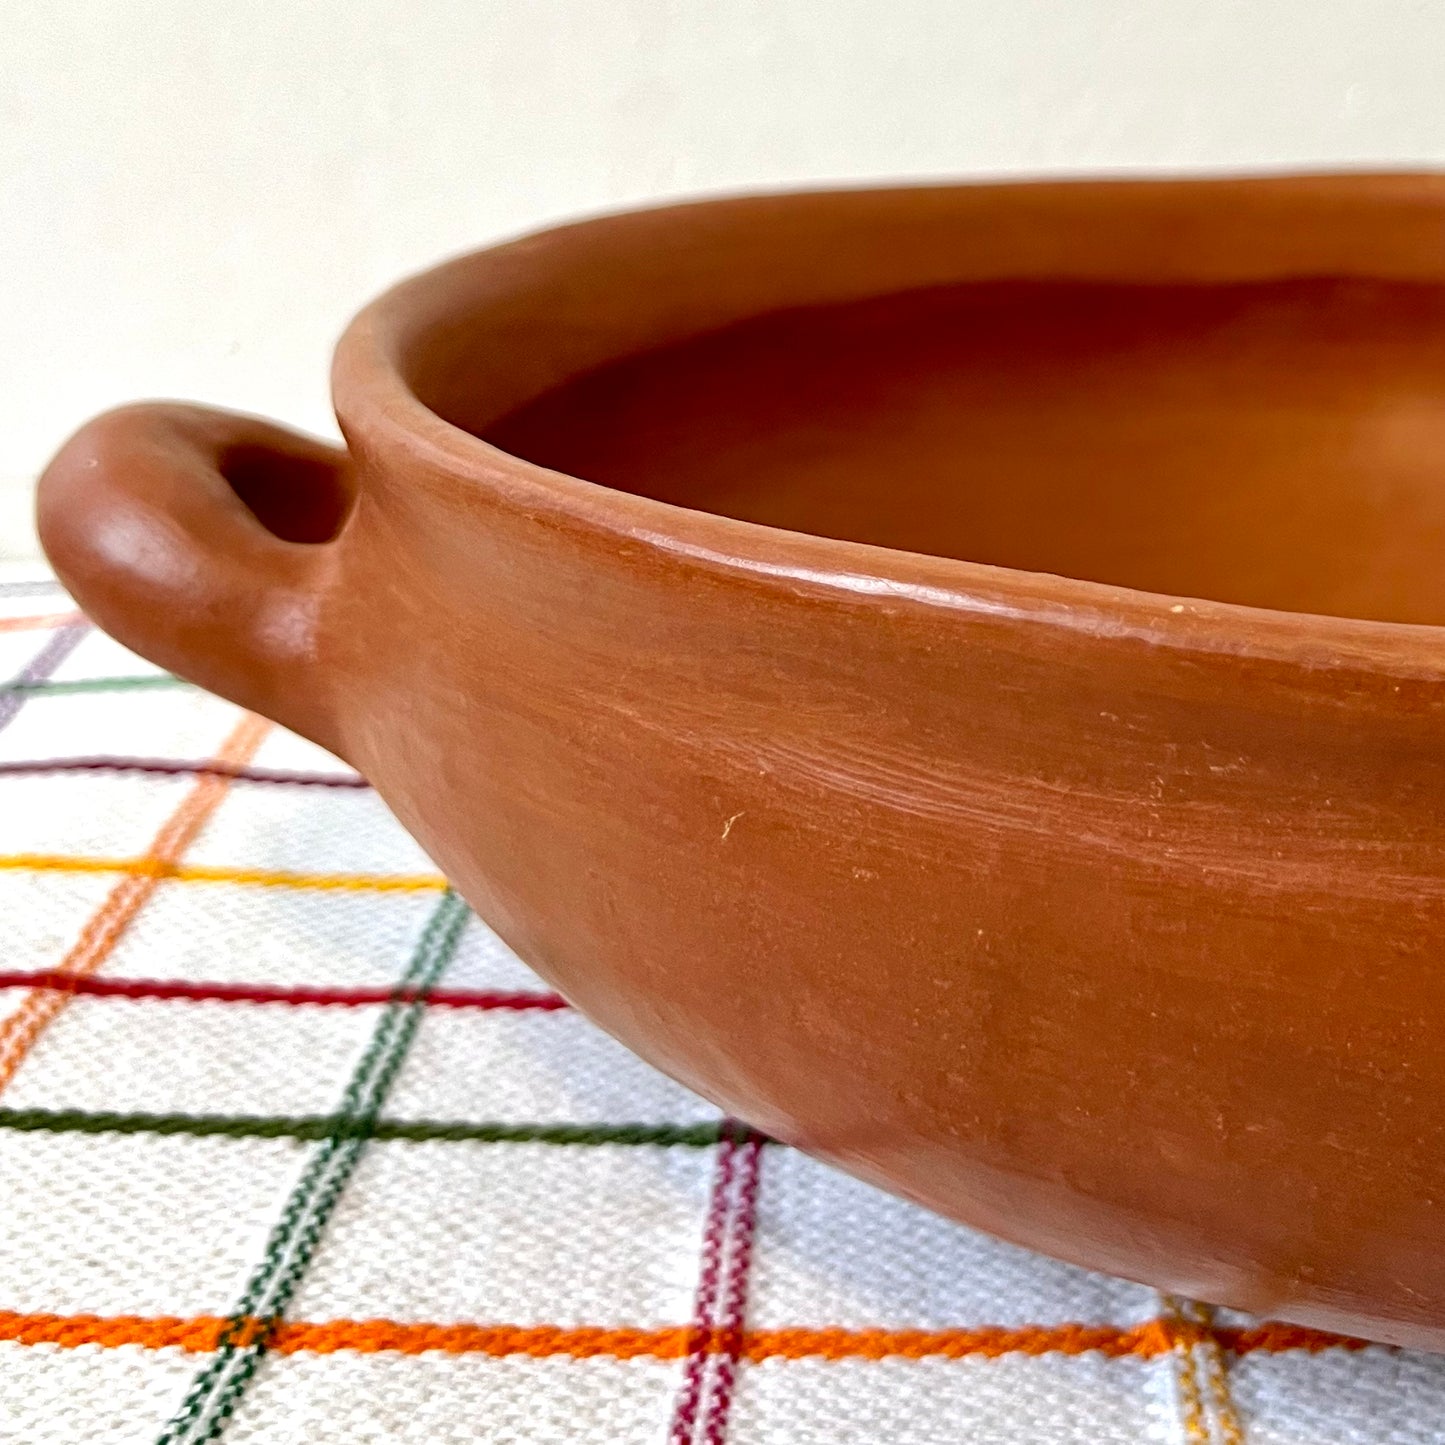 Barro Rojo Cazuela Pot with Handles & Lid (Preorder)